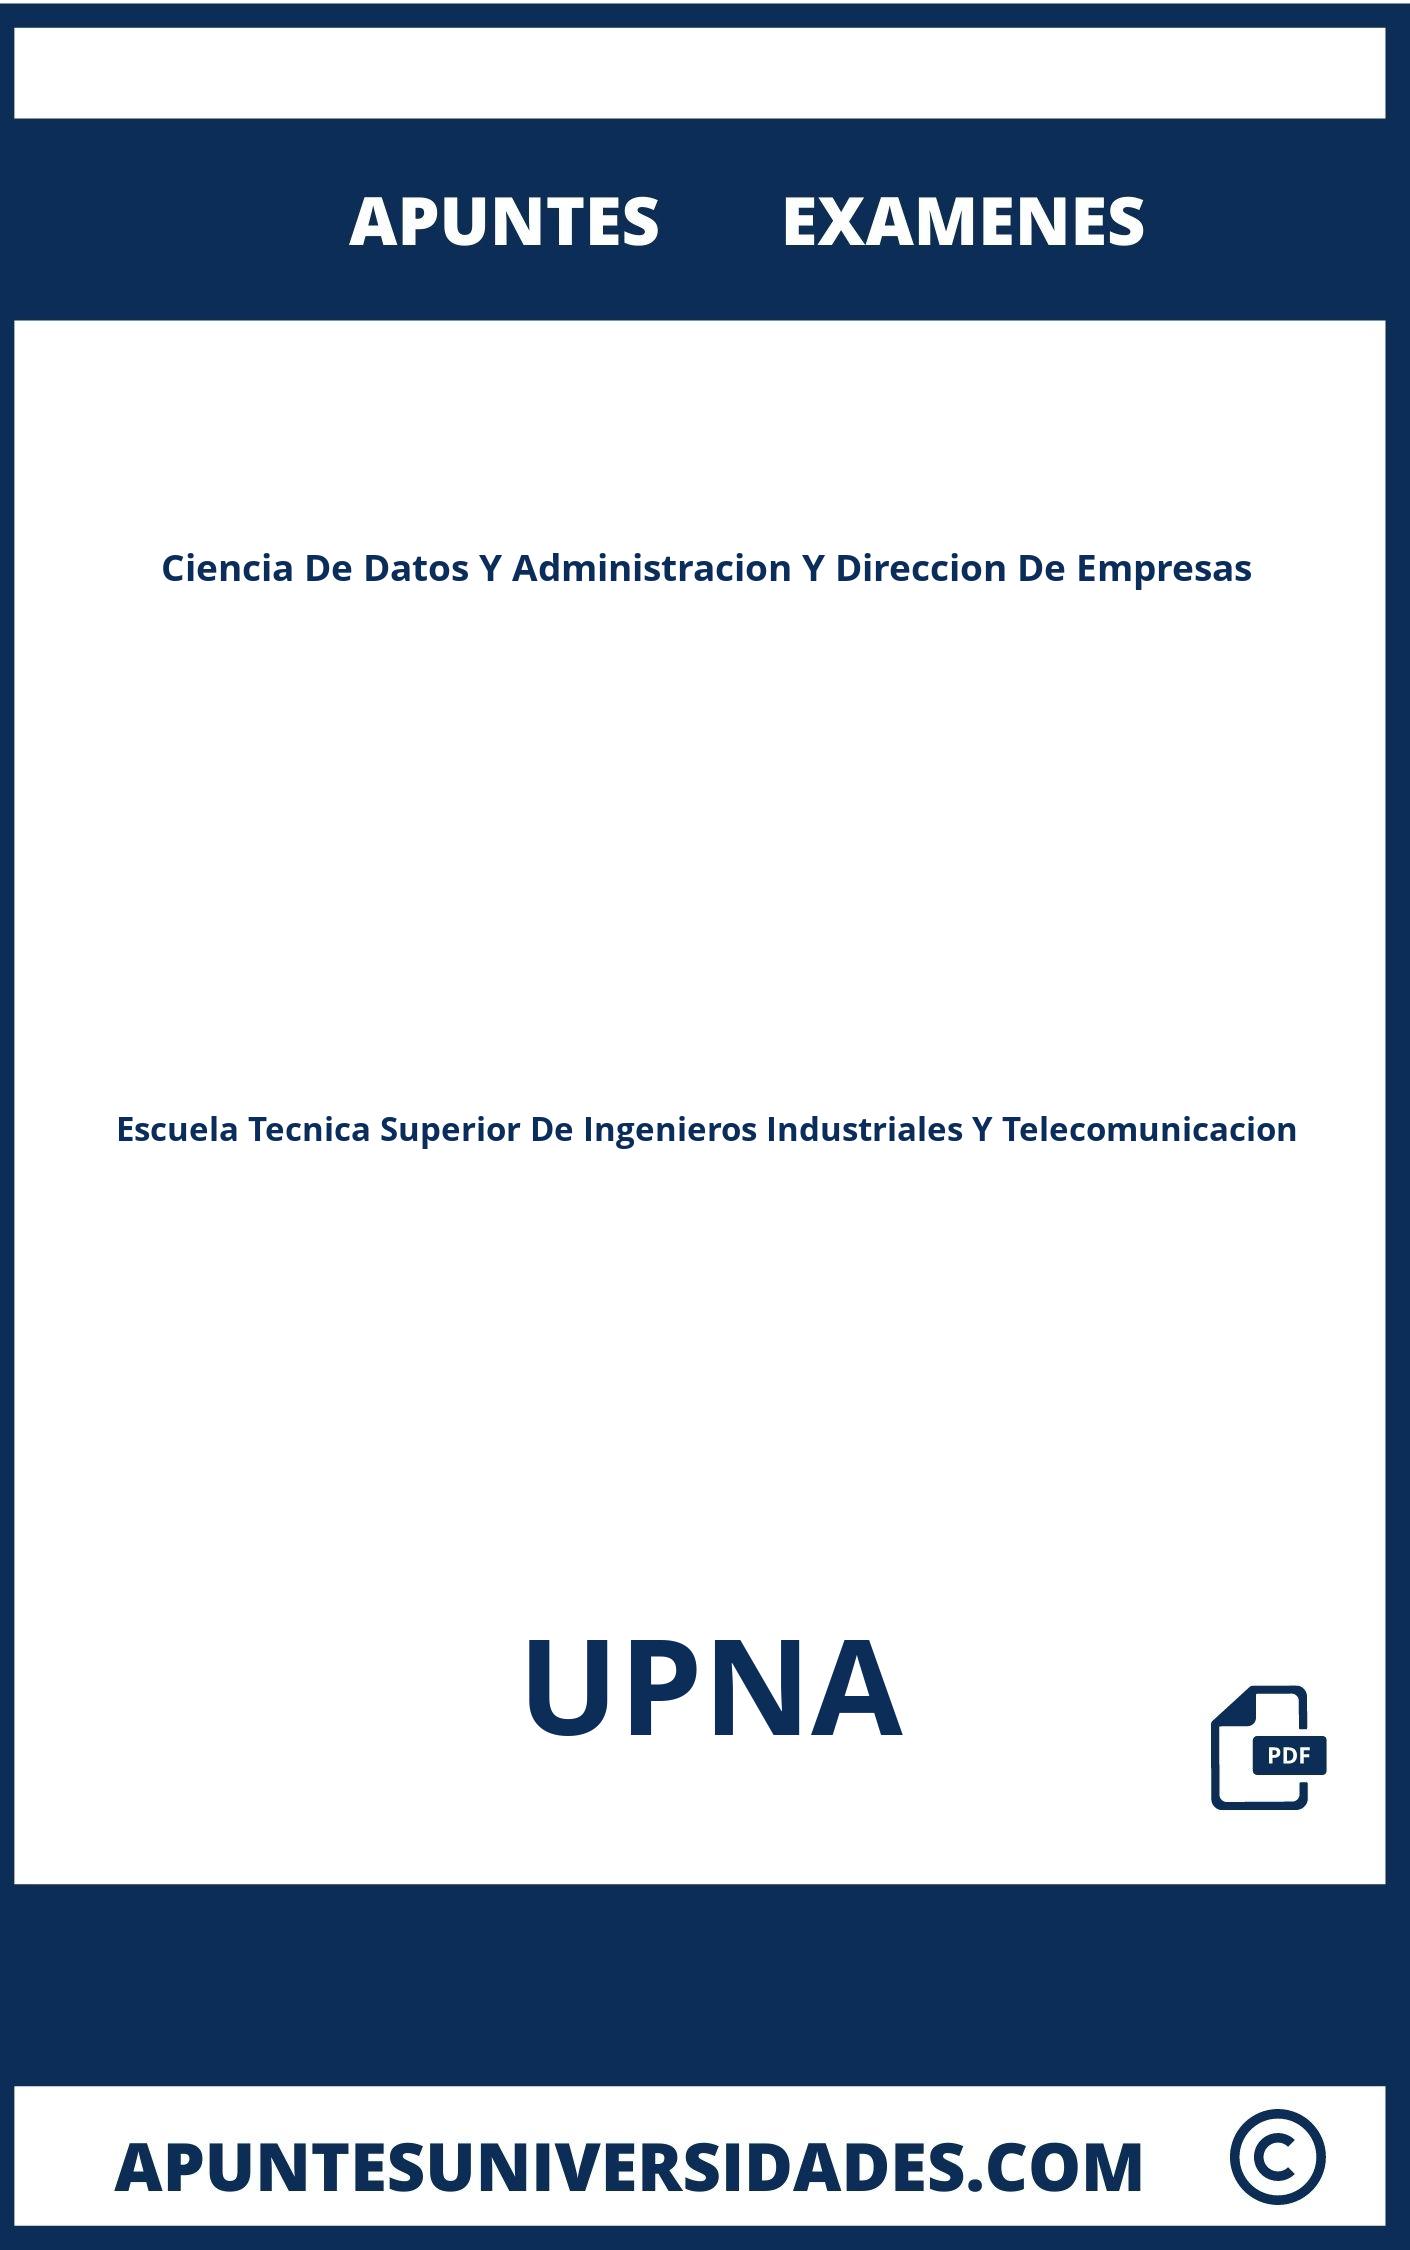 Apuntes Examenes Ciencia De Datos Y Administracion Y Direccion De Empresas UPNA